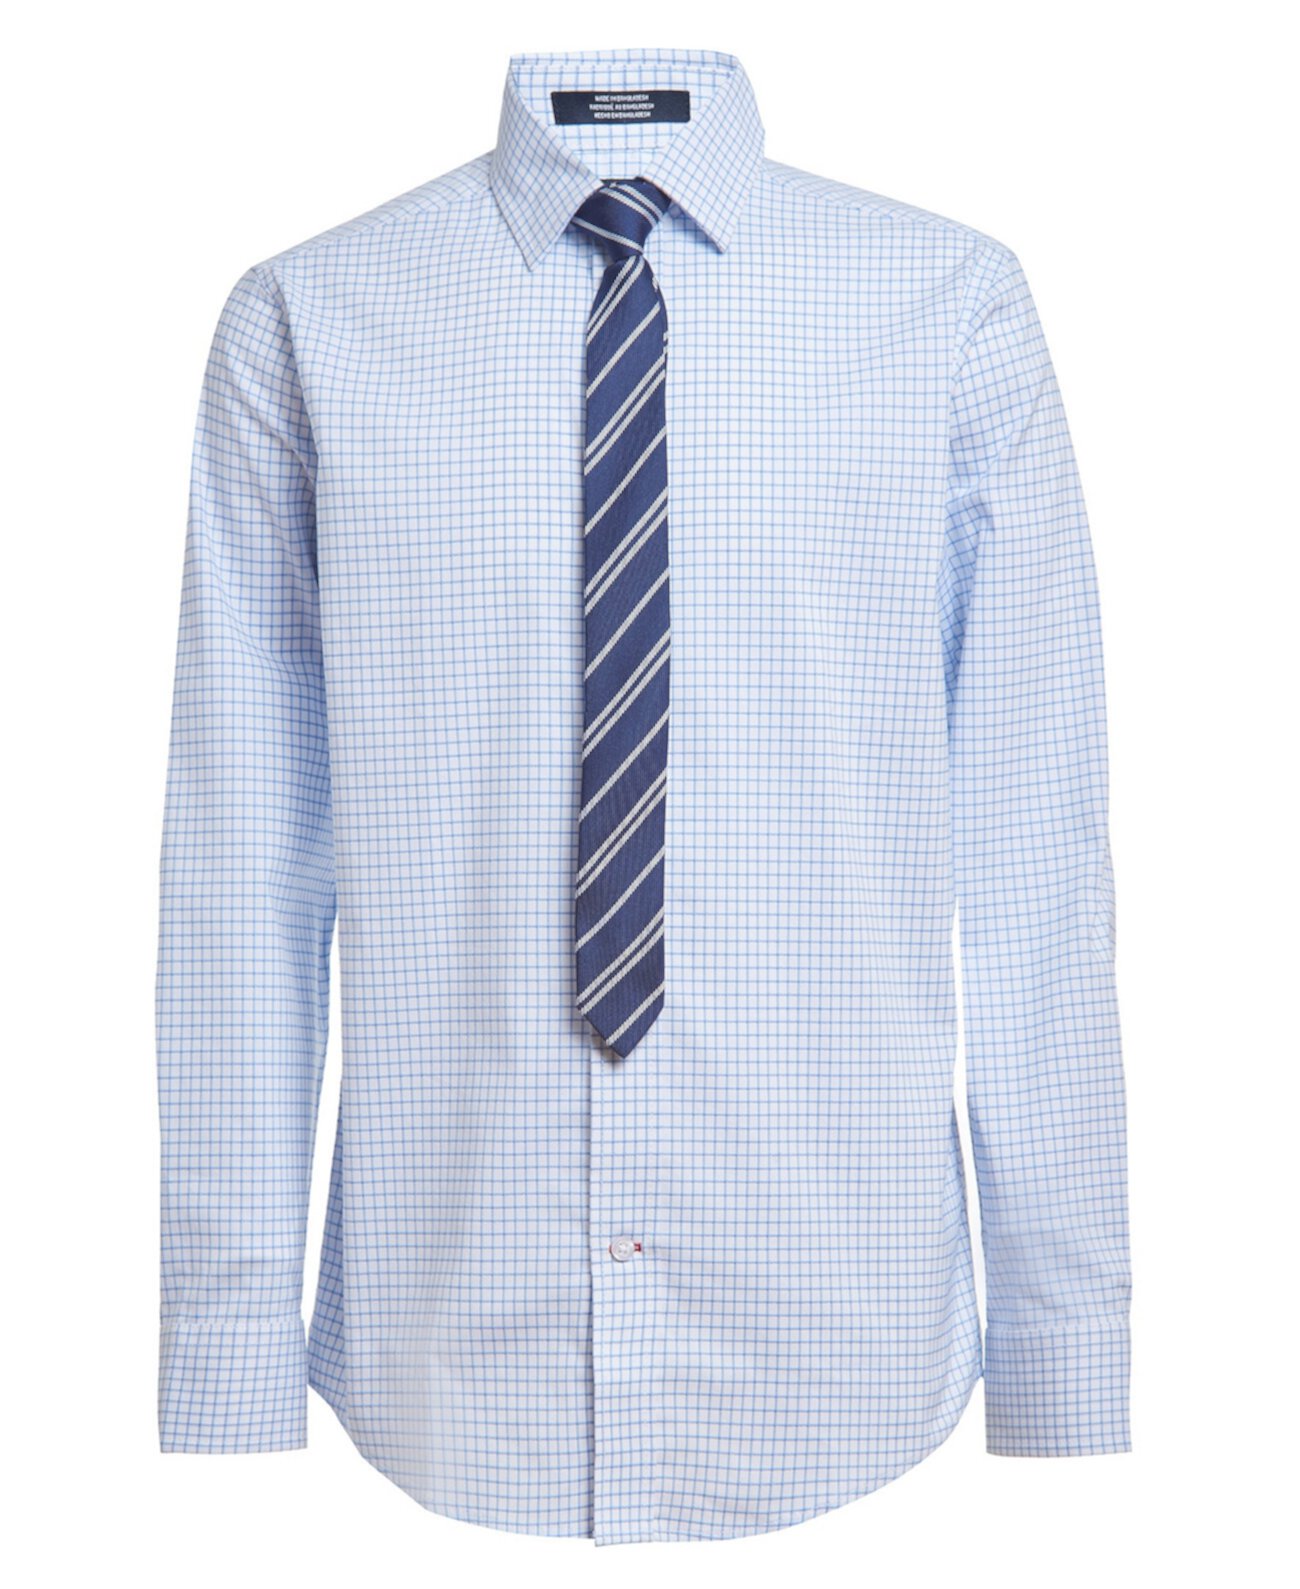 Рубашка и галстук Big Boys Stretch Shadow Grid, комплект из 2 предметов Tommy Hilfiger